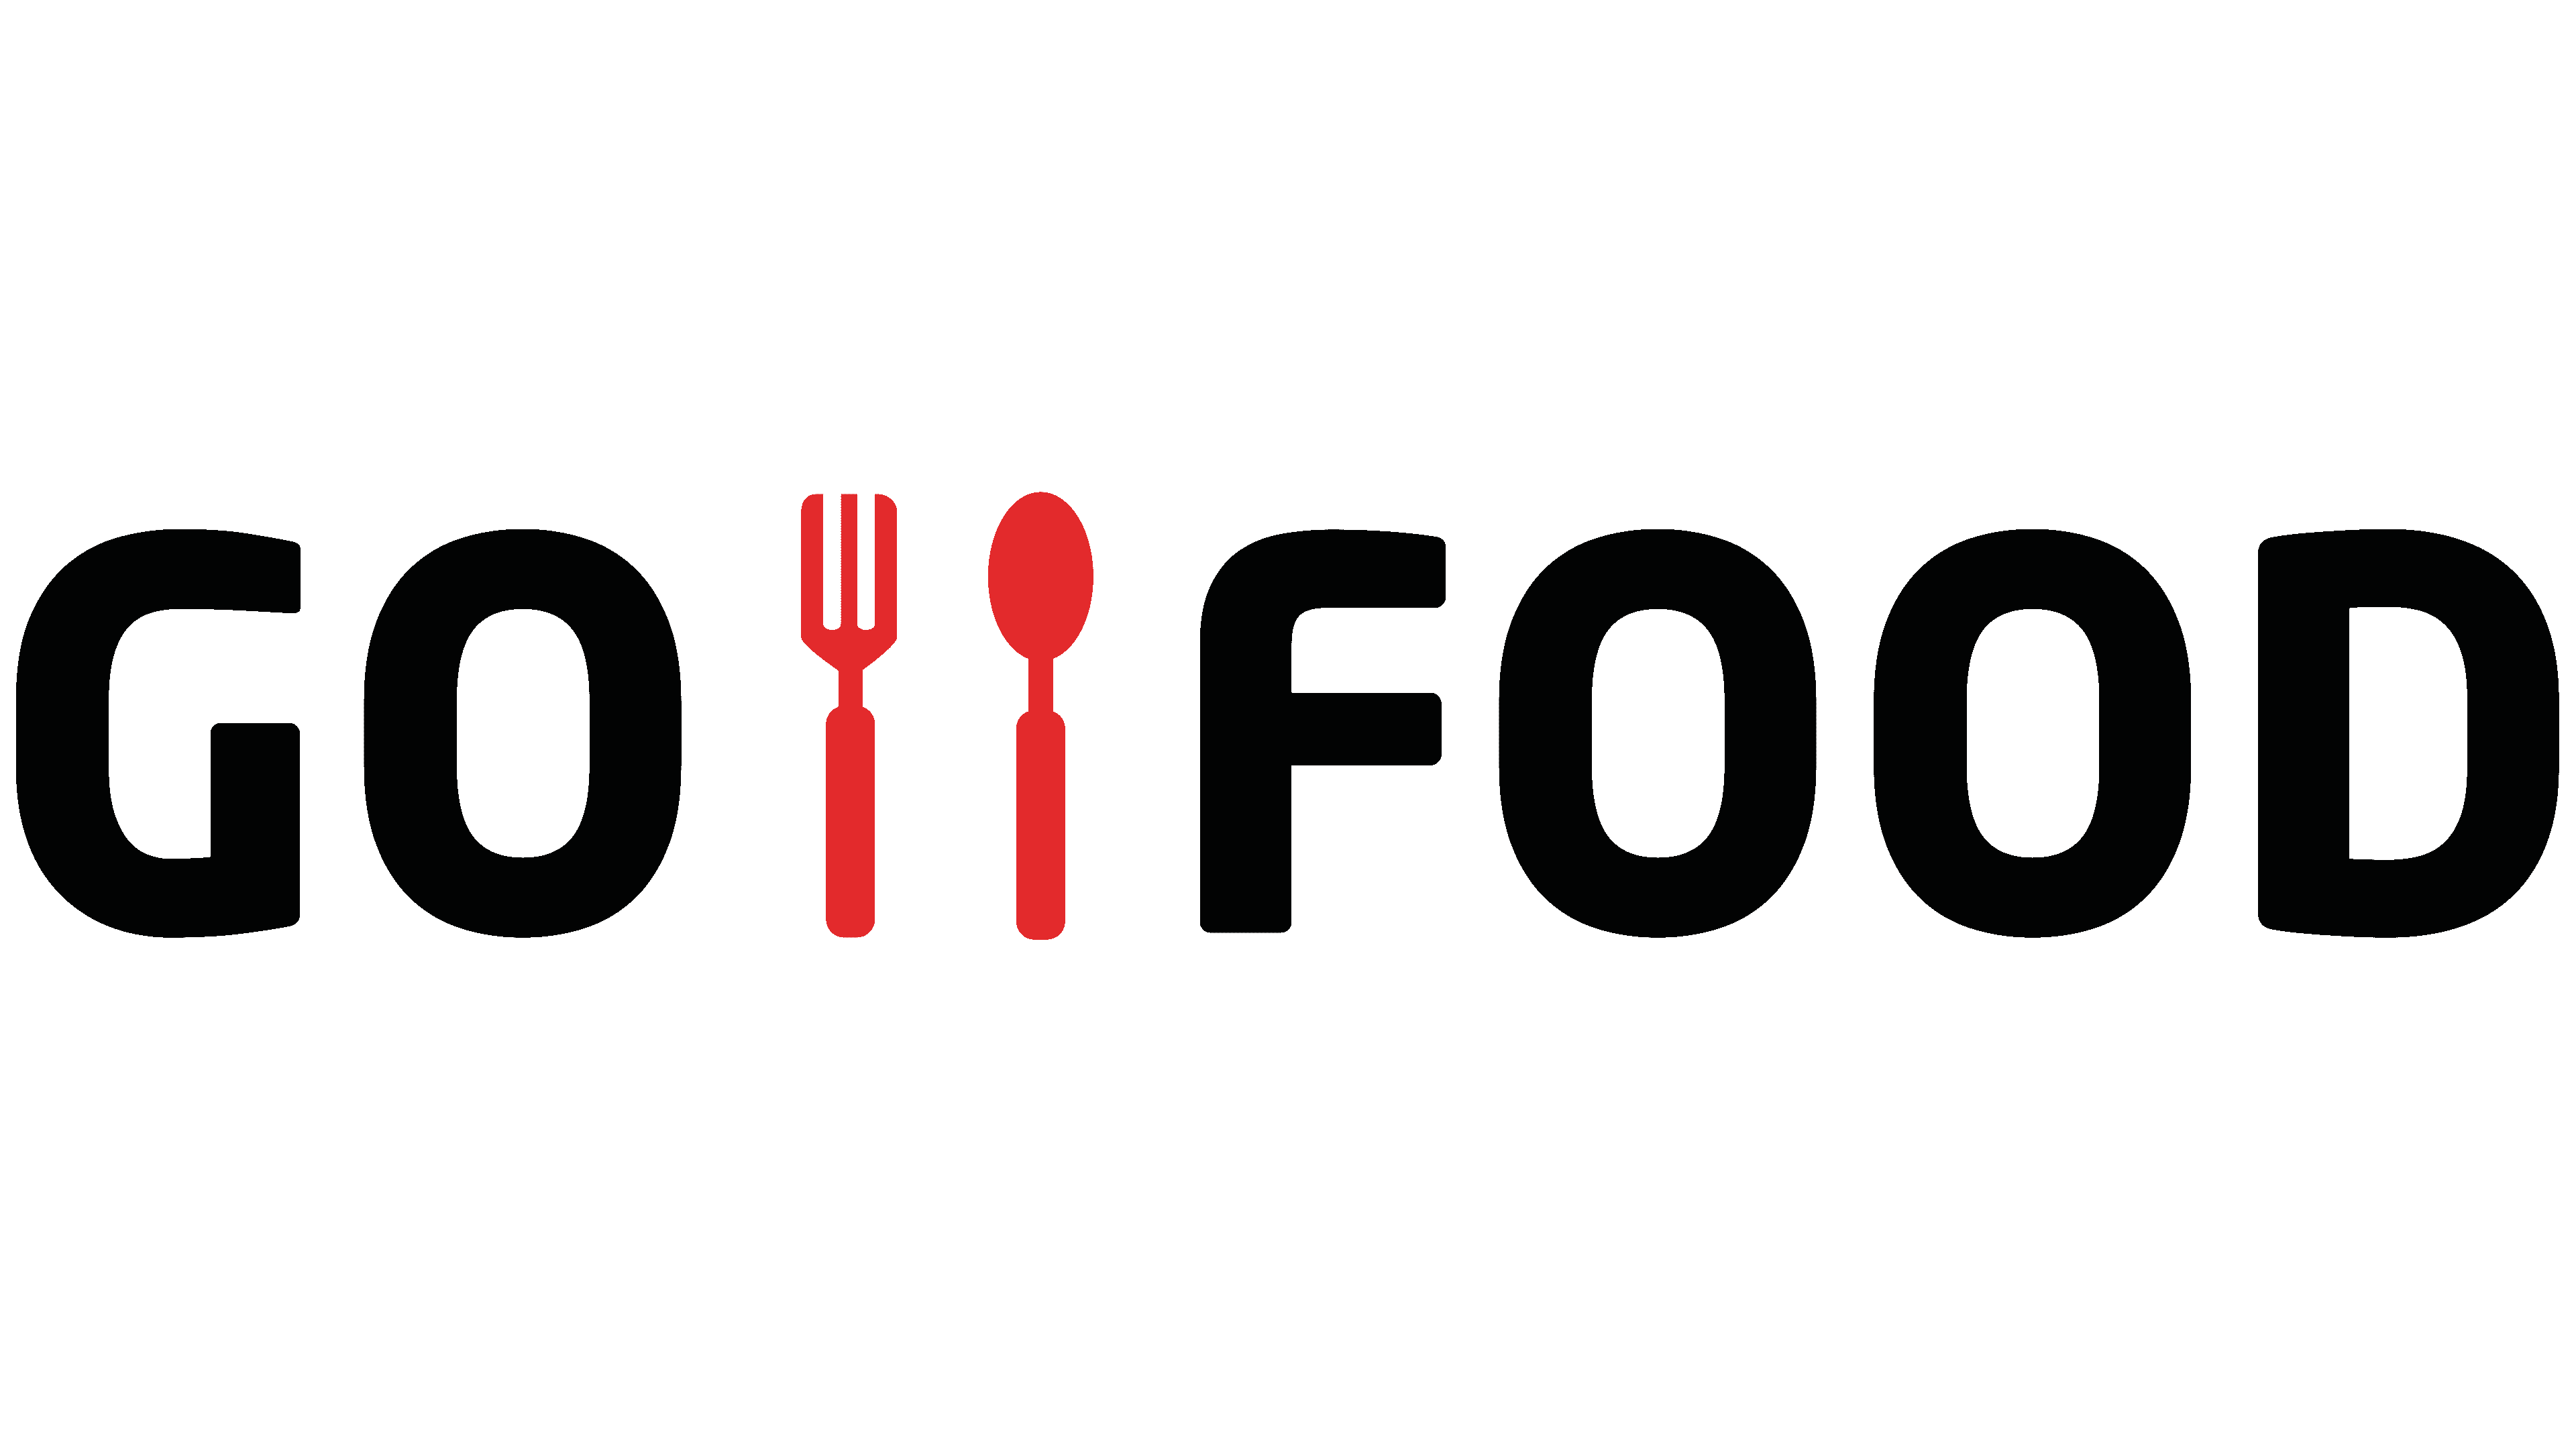 Gojek Logo - Gofood Logo, symbol, meaning, history